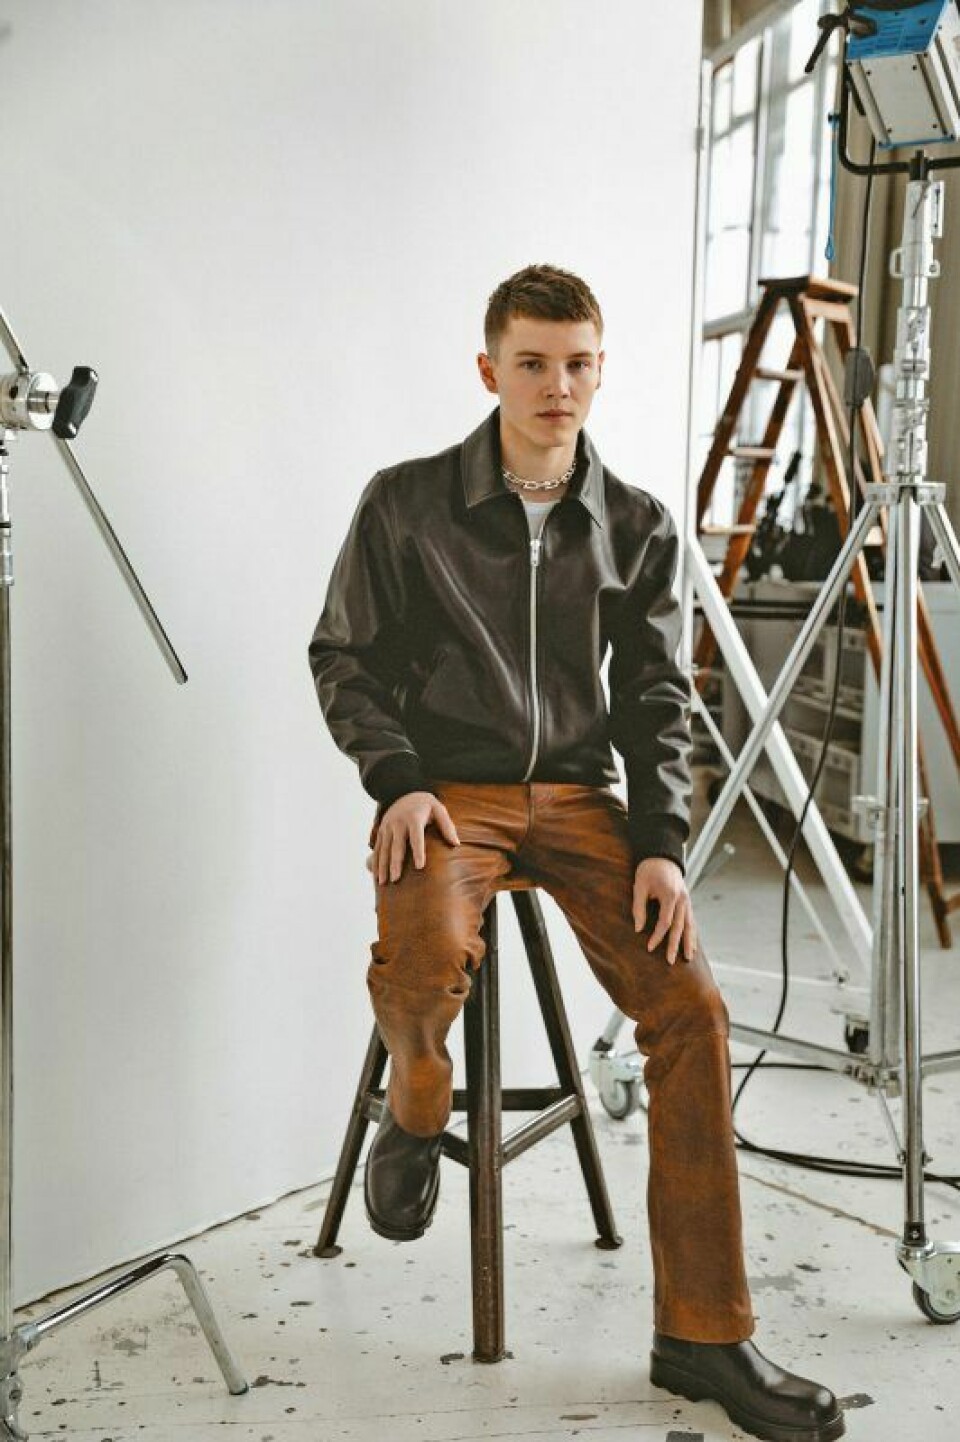 Grev Felix arbejder ligesom sin storebror som model og lavede sin første opgave for Georg Jensen. (Foto: Marco van Rijt/Scoop Models)